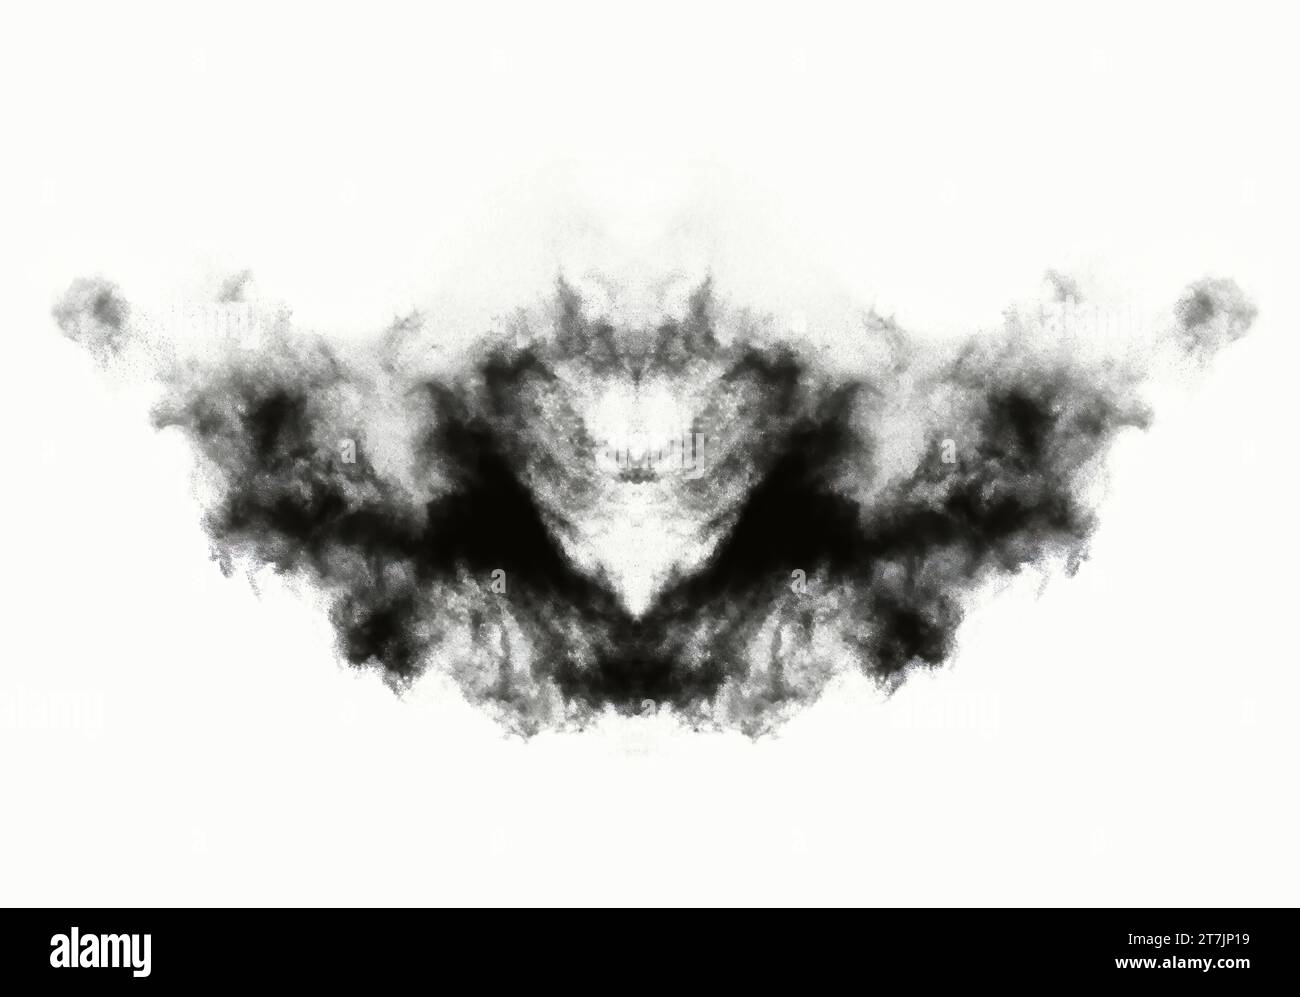 Rorschach test inkblot, scheda test psicologico illustrazione concettuale Foto Stock